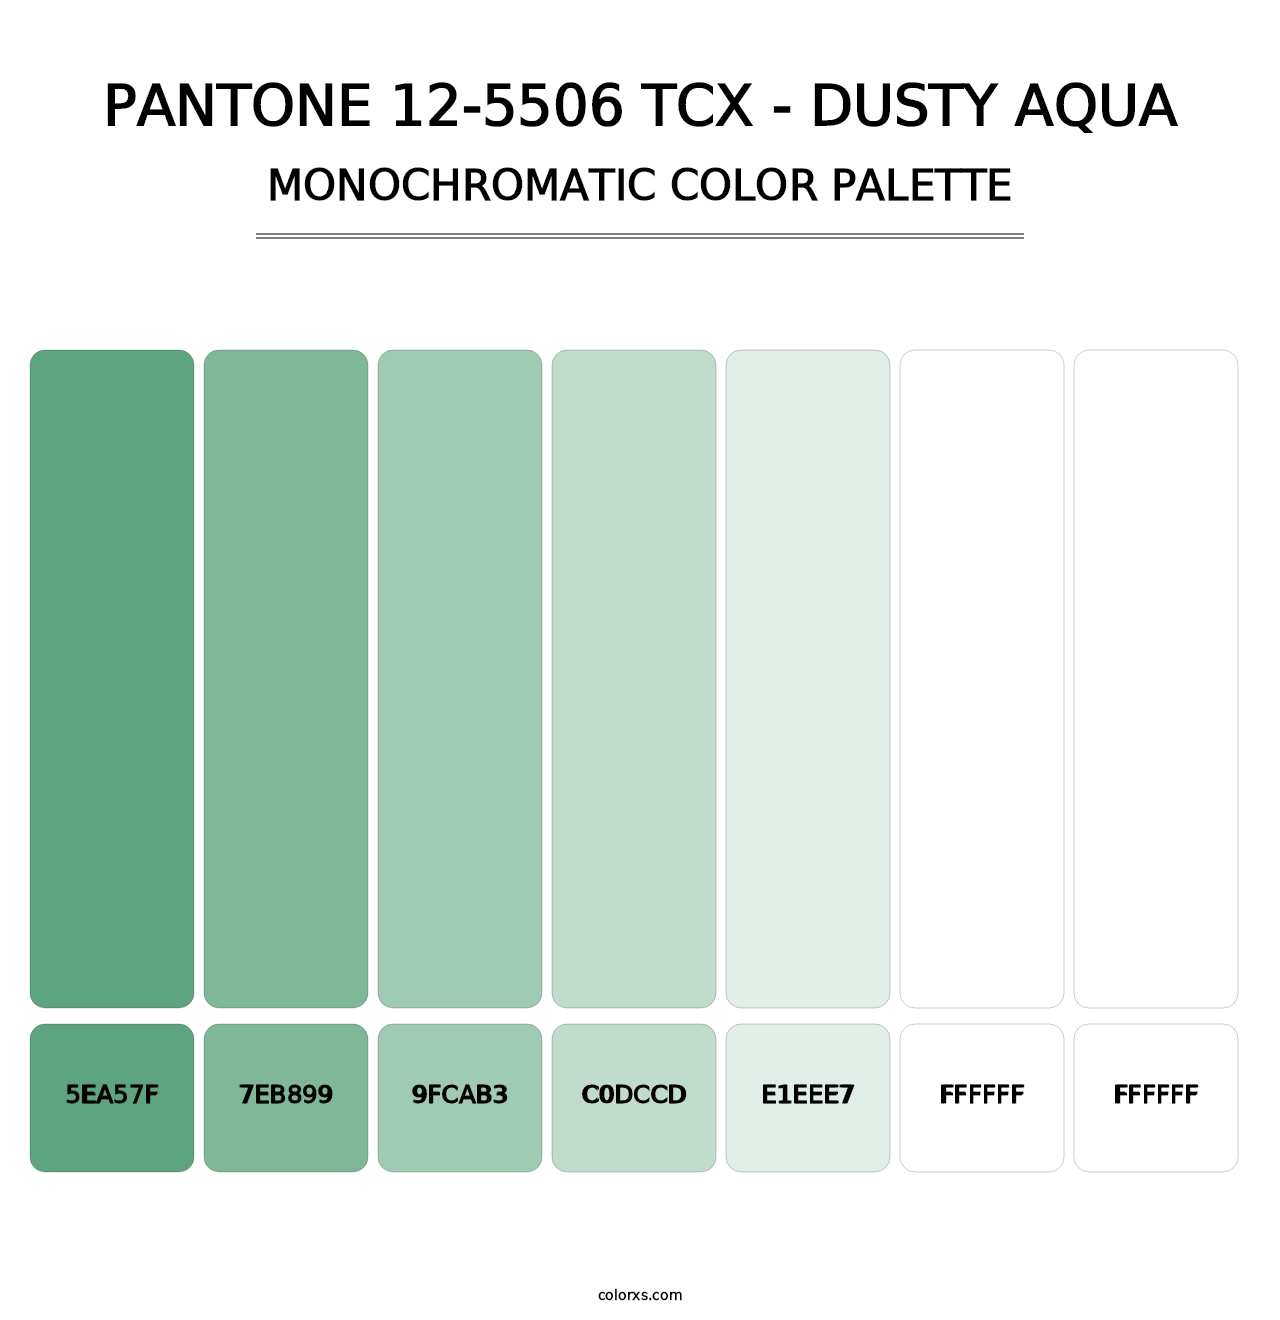 PANTONE 12-5506 TCX - Dusty Aqua - Monochromatic Color Palette